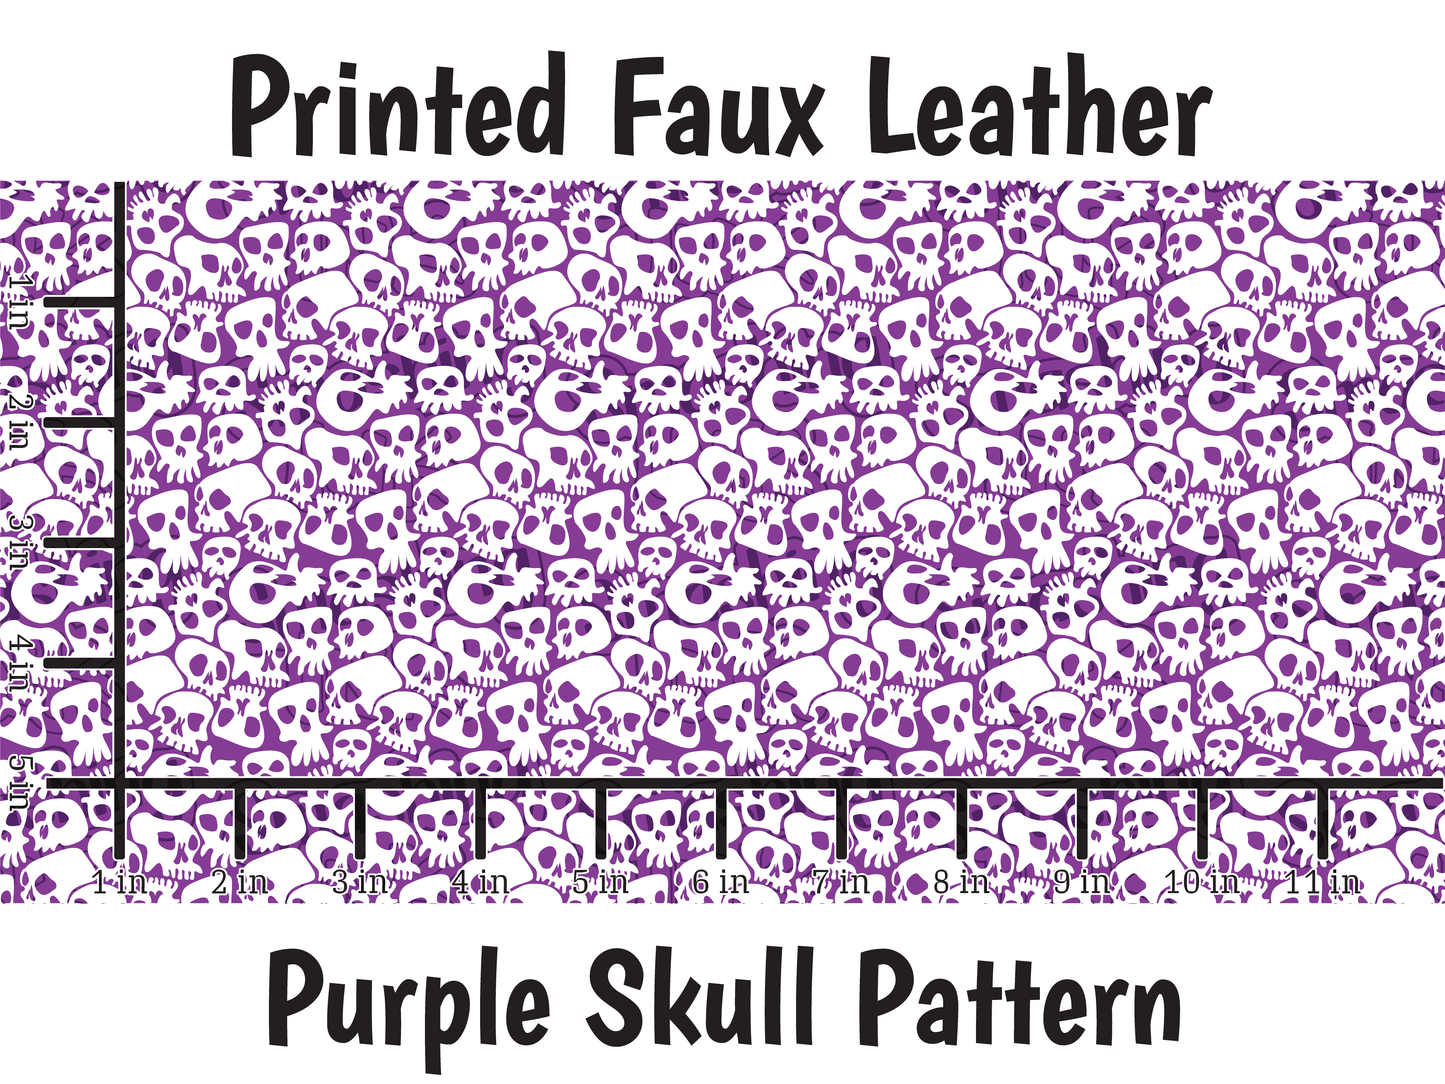 Purple Skull Pattern - Faux Leather Sheet (SHIPS IN 3 BUS DAYS)